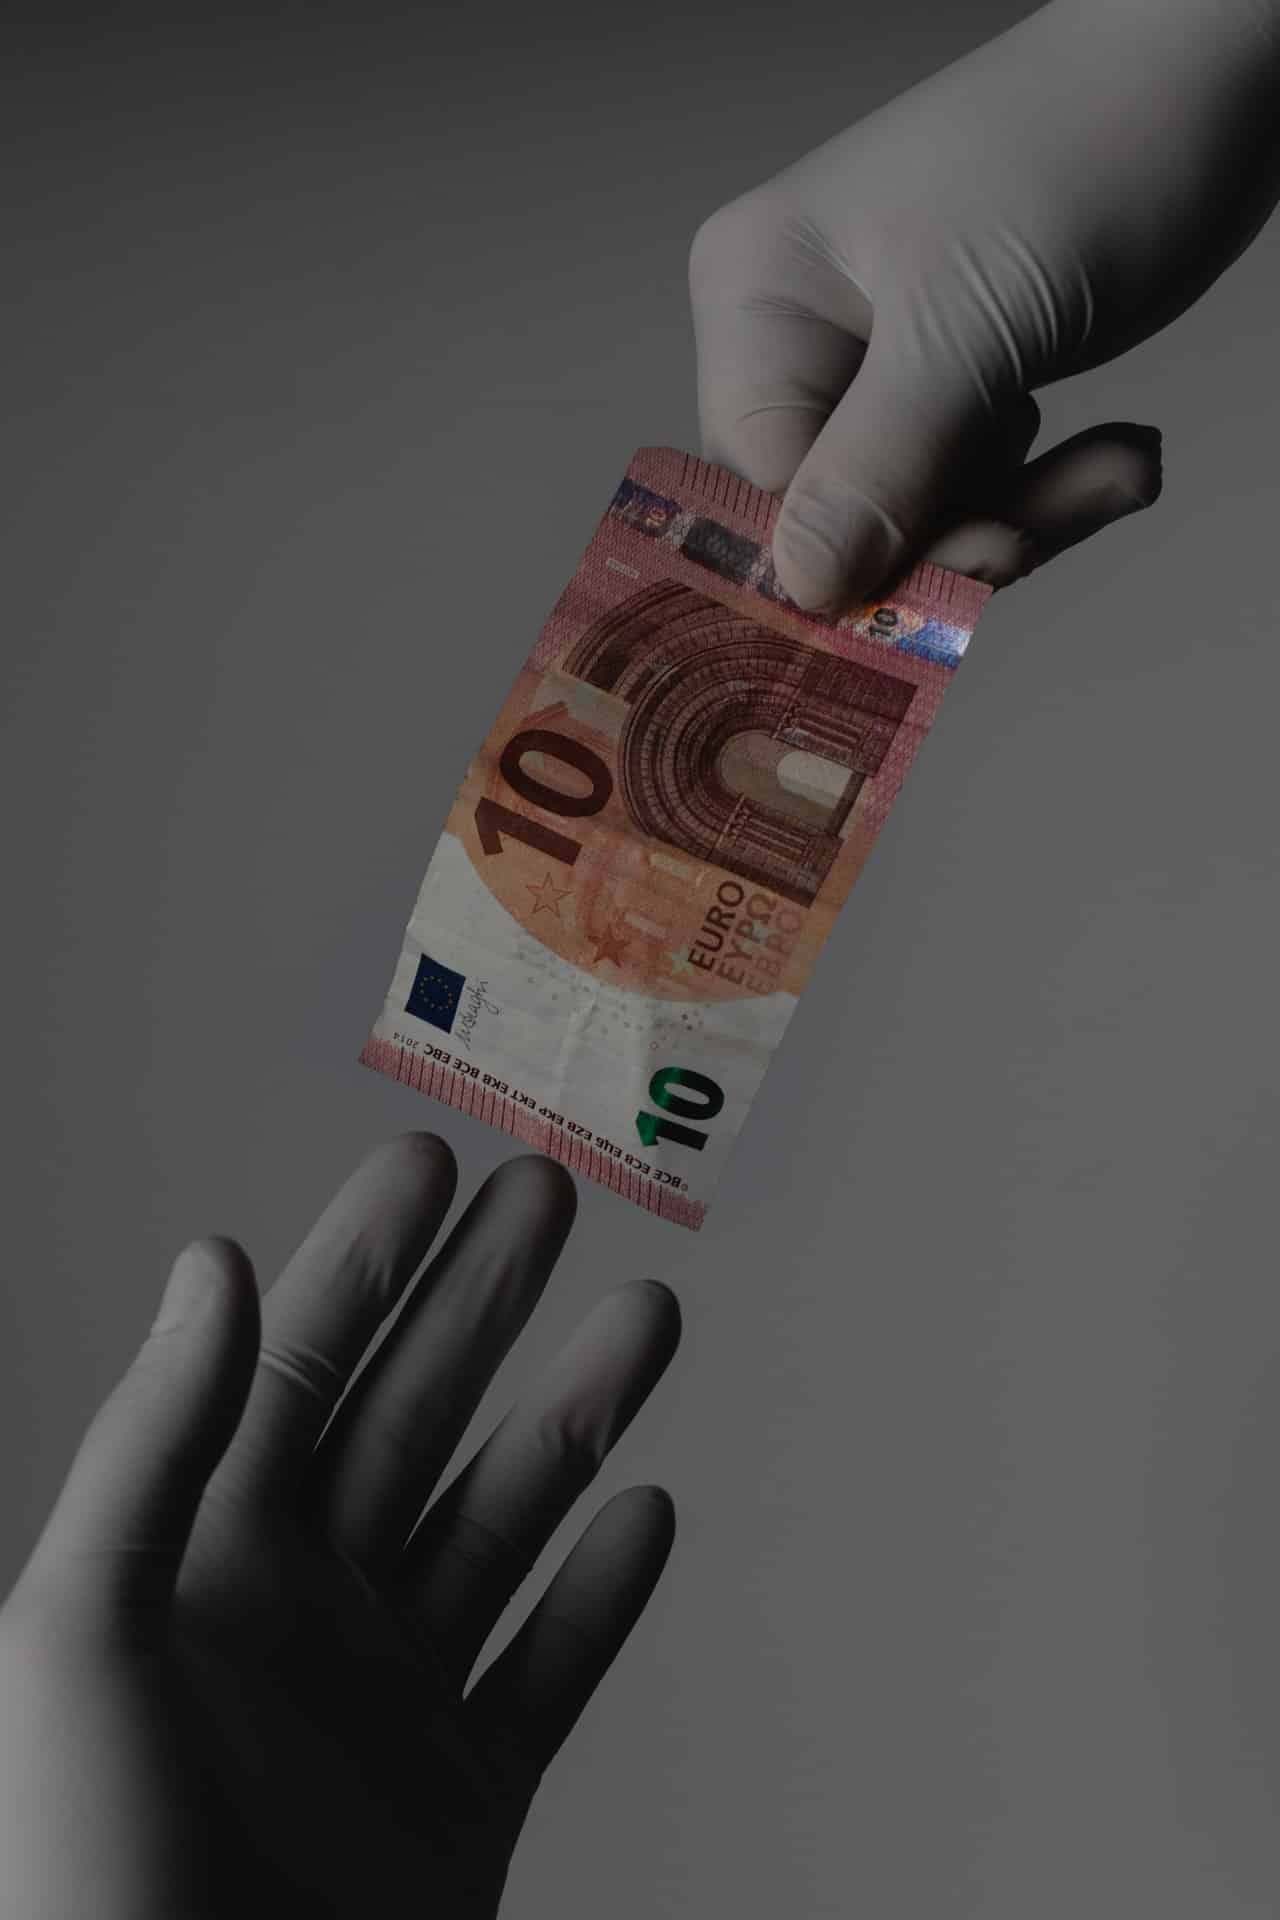 mani che indossano guanti per profilassi da contagio Covid19 si passano una banconota da 10 euro